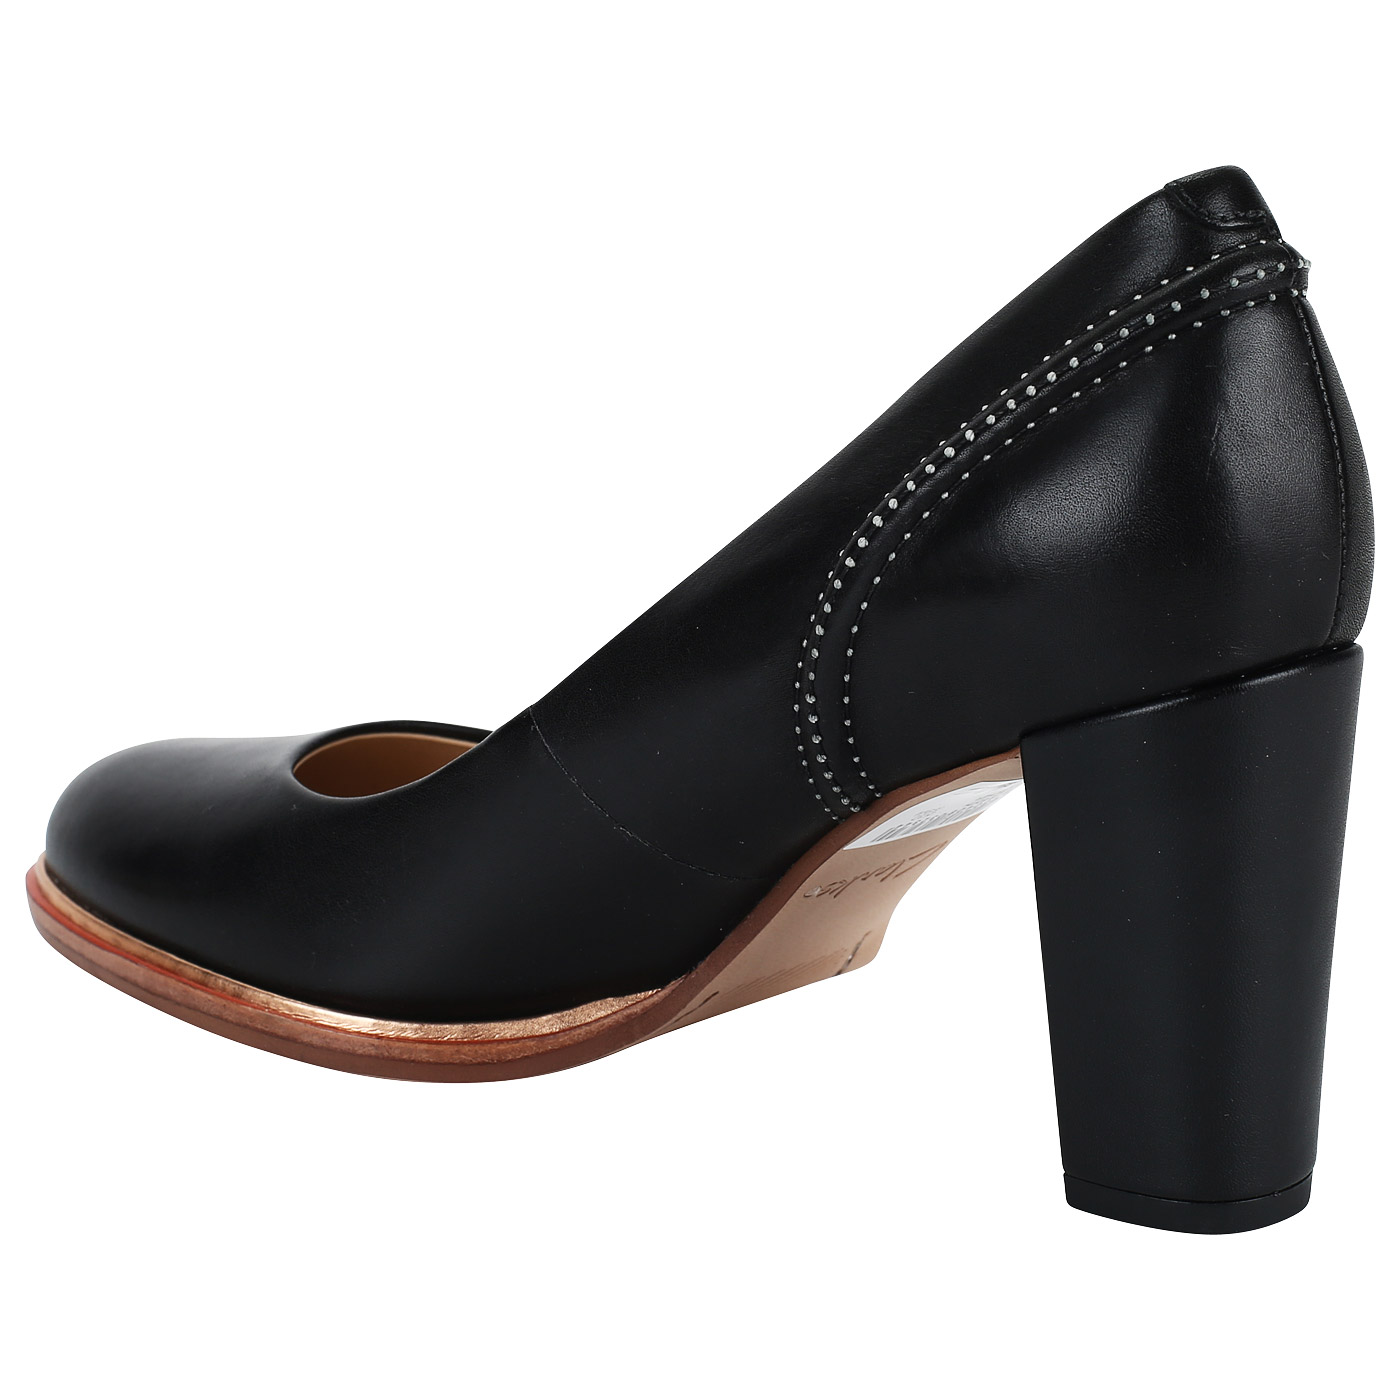 Черные женские туфли на каблуке Clarks Ellis Edith